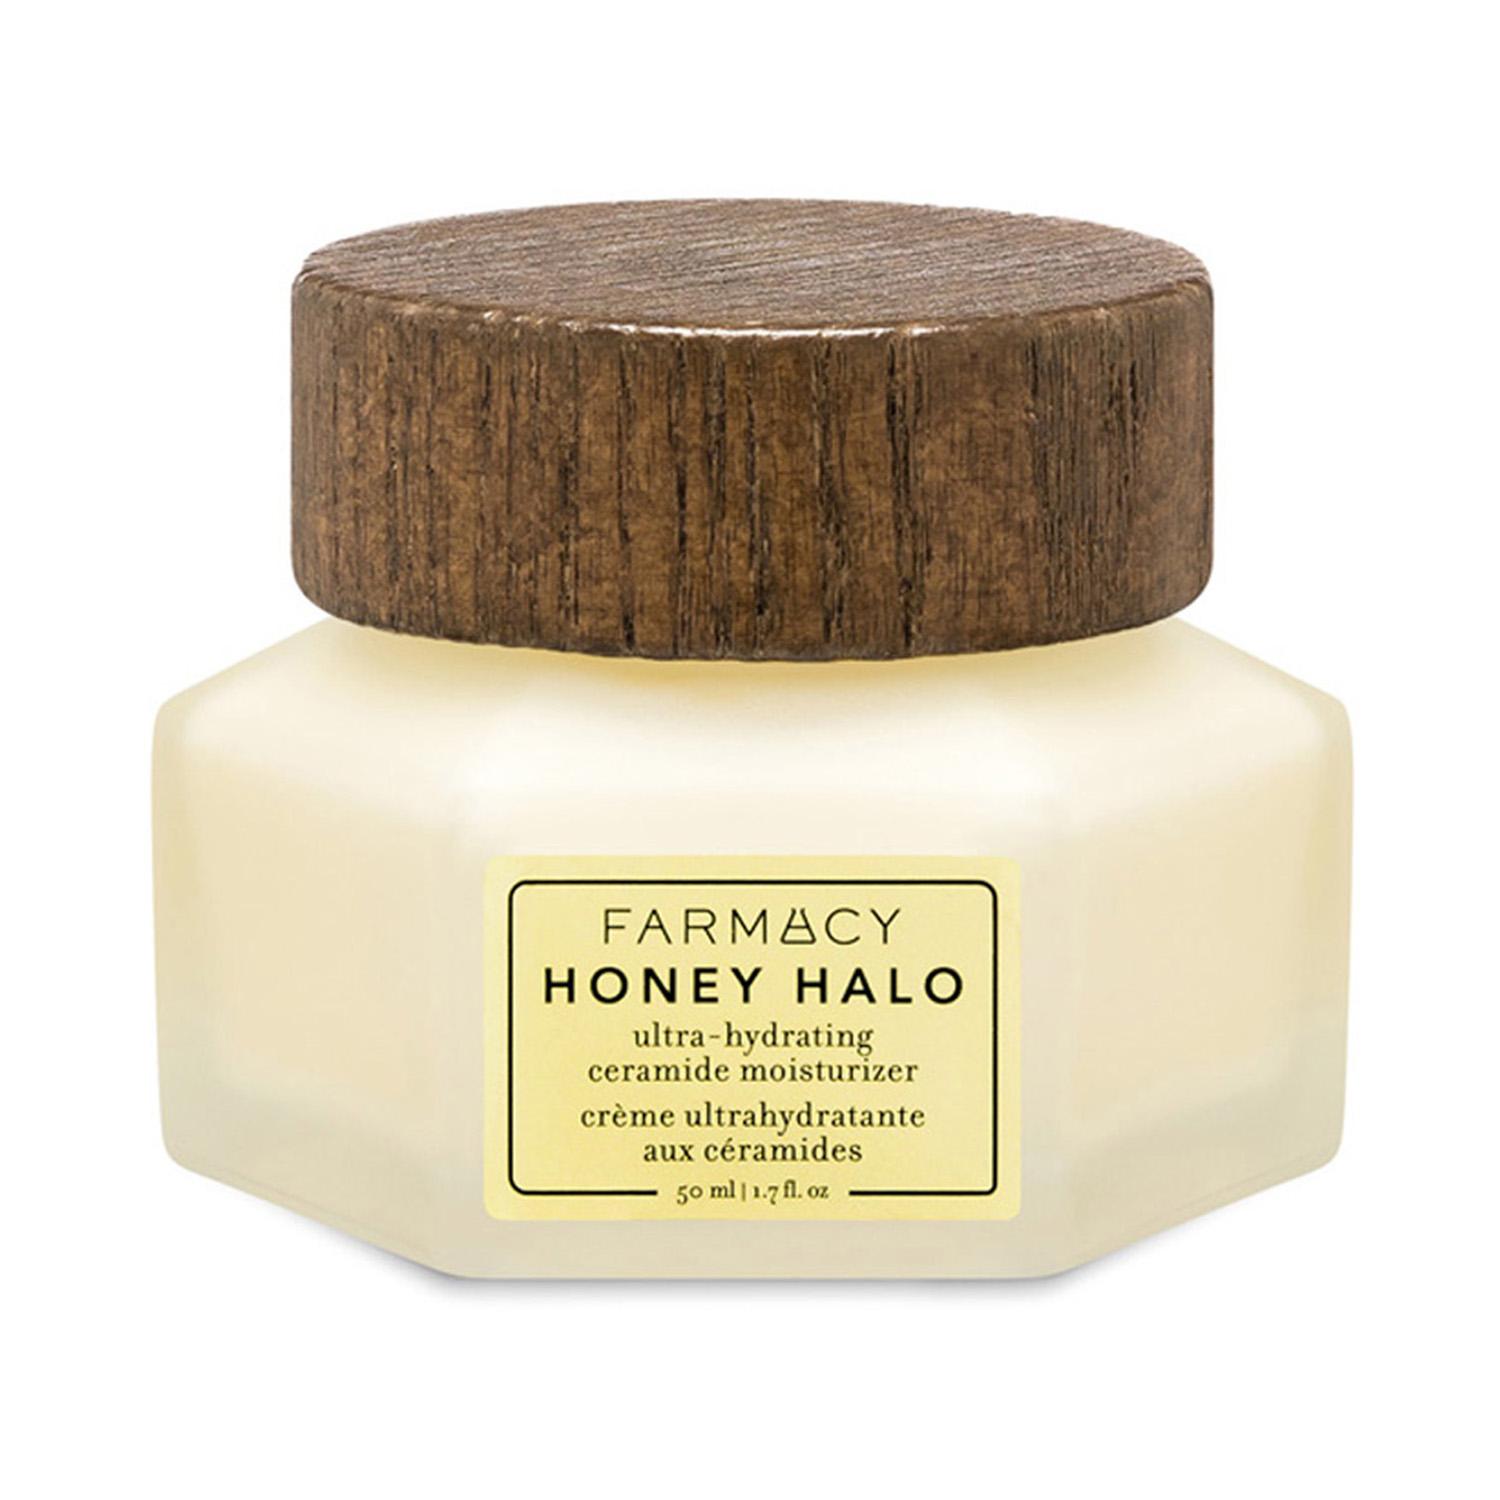 Farmacy Beauty | Farmacy Beauty Honey Halo Ultra-Hydrating Ceramide Moisturizer (50ml)